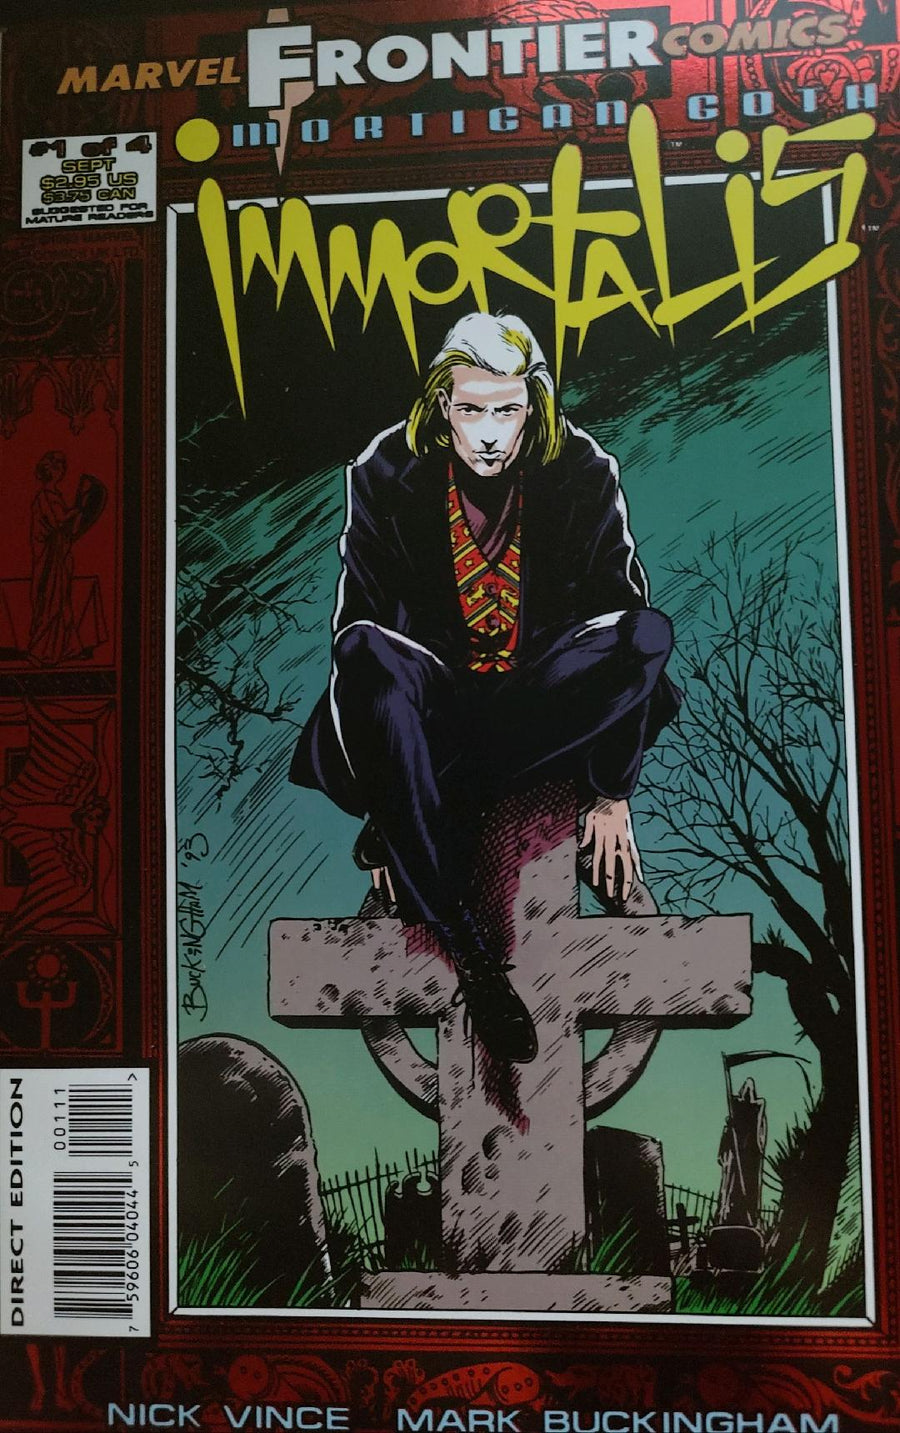 Mortigan Goth Immortalis #1 Comic Book Cover